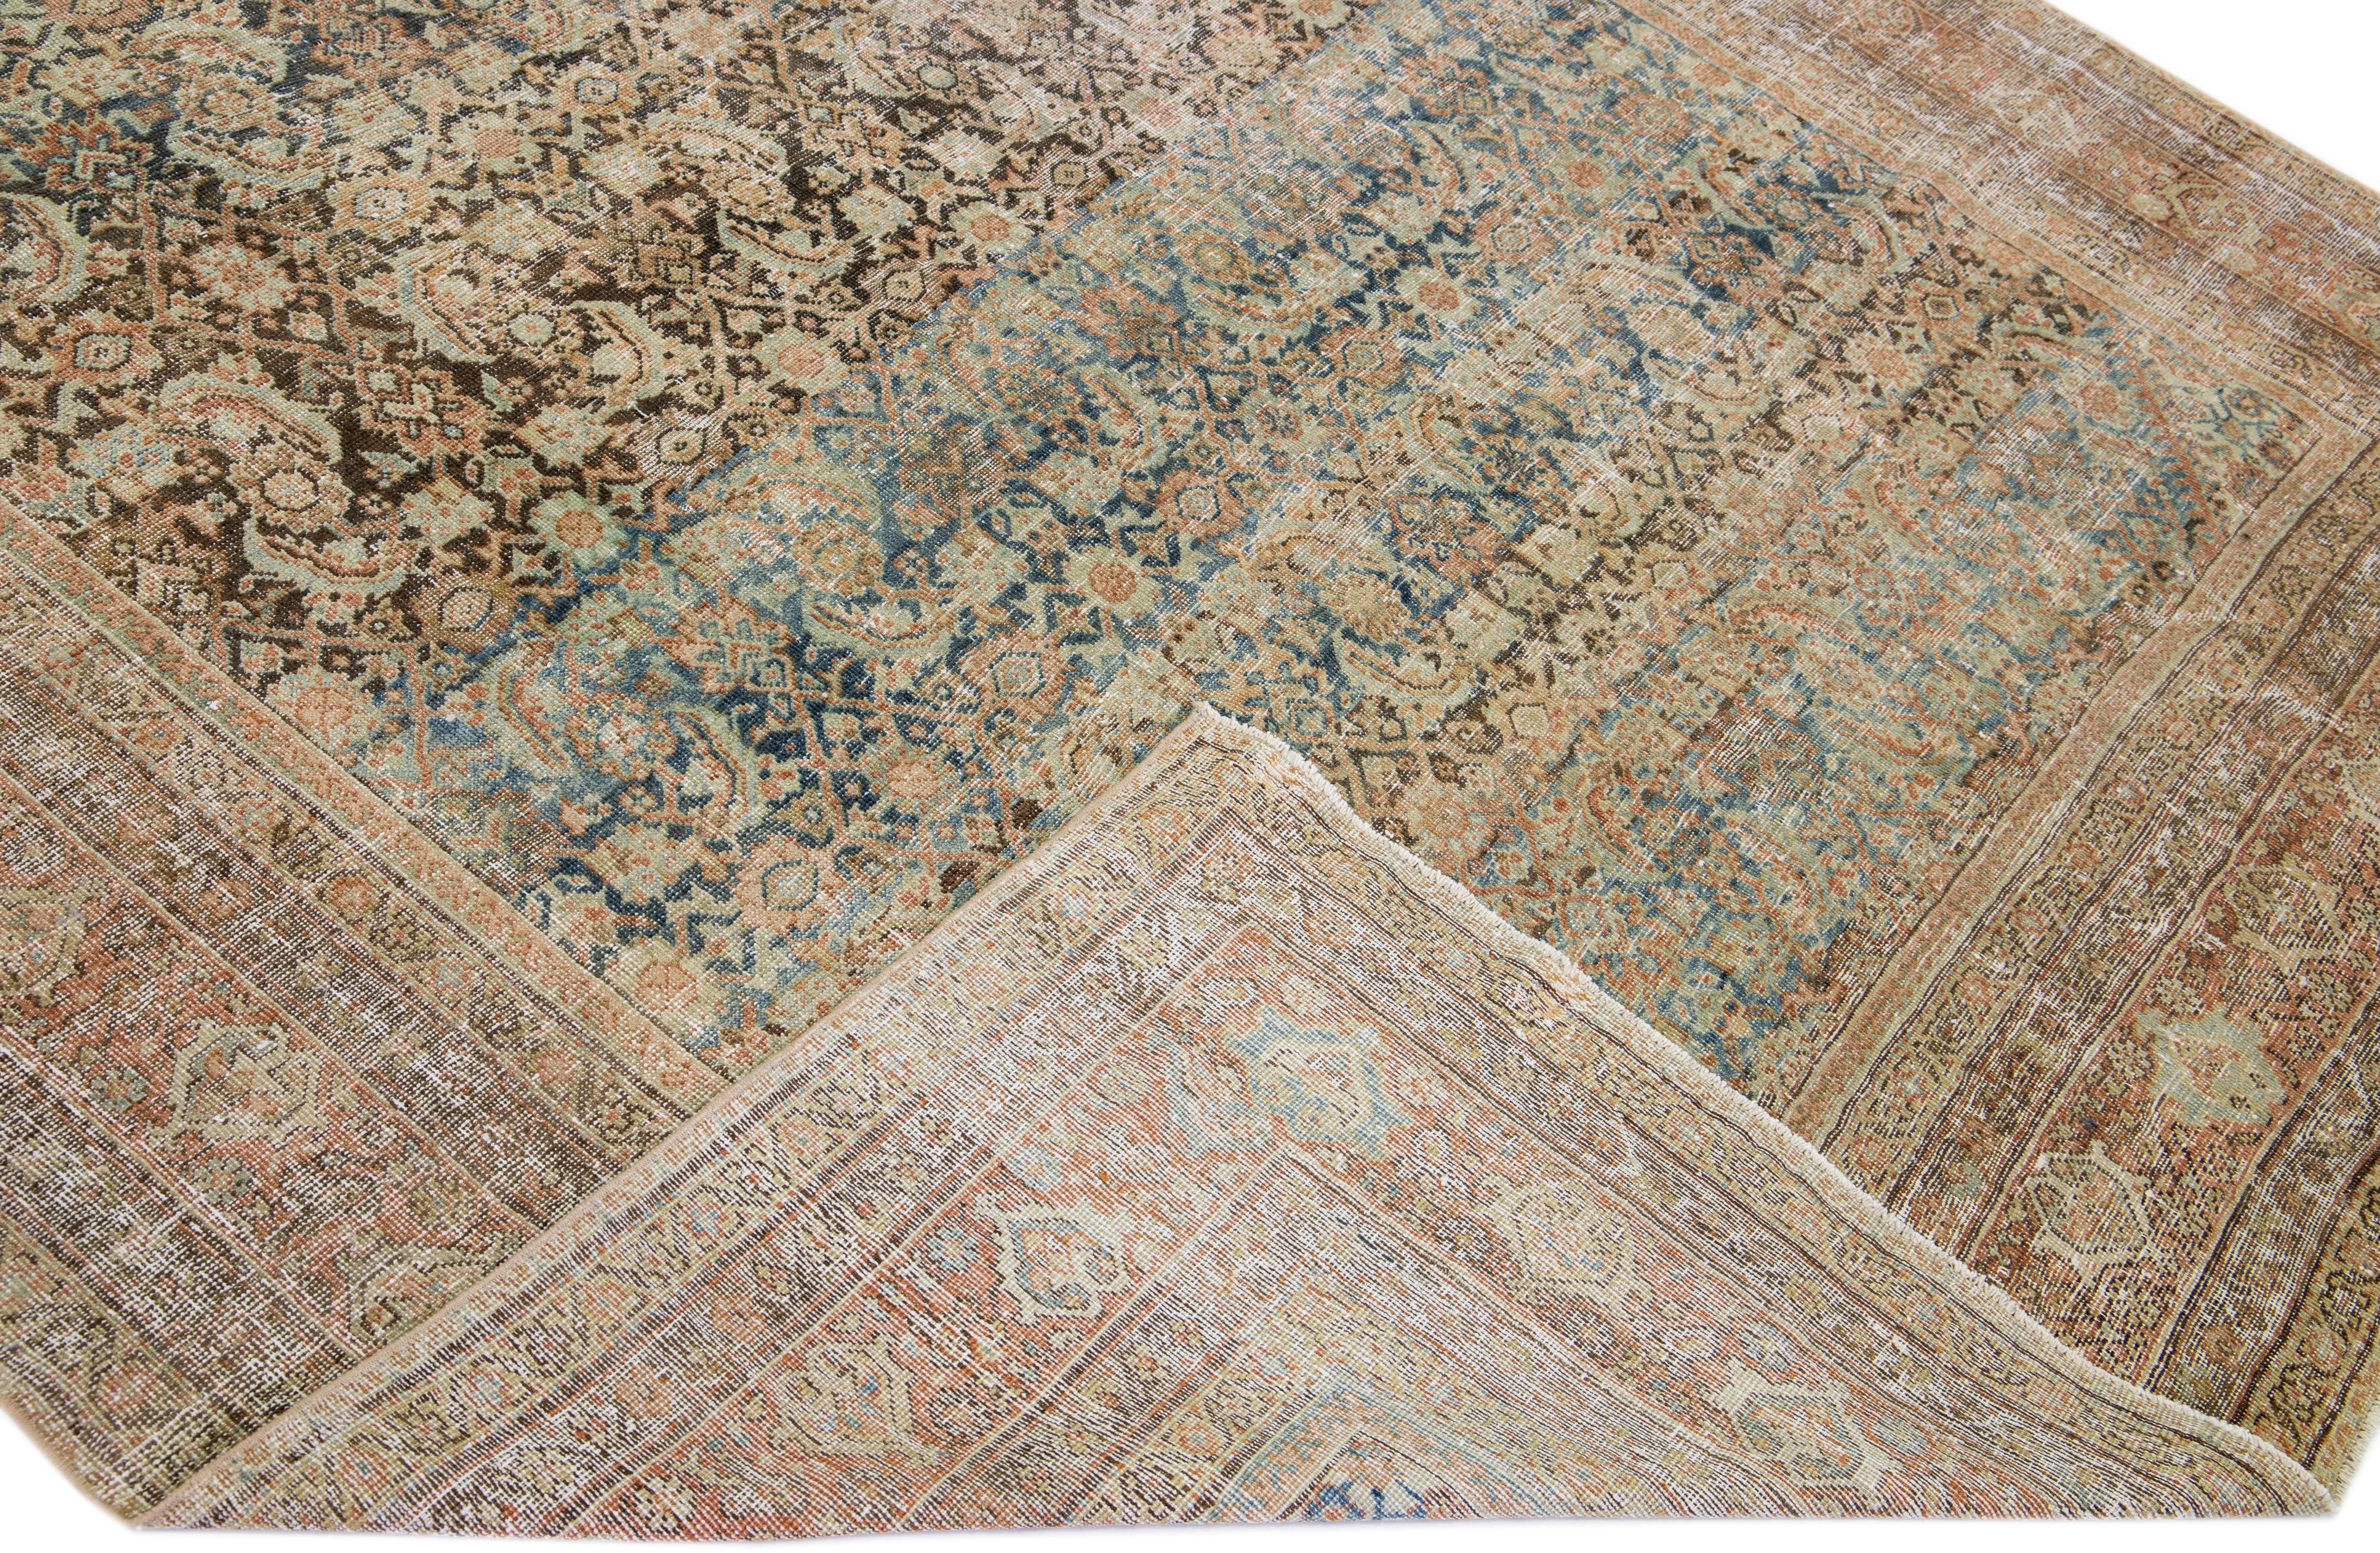 Schöne antike Malayer handgeknüpften Wollteppich mit einem marineblauen Farbfeld. Dieser Perserteppich hat rostrote und beigefarbene Akzente in einem prächtigen floralen Allover-Muster.

Dieser Teppich misst 7'8